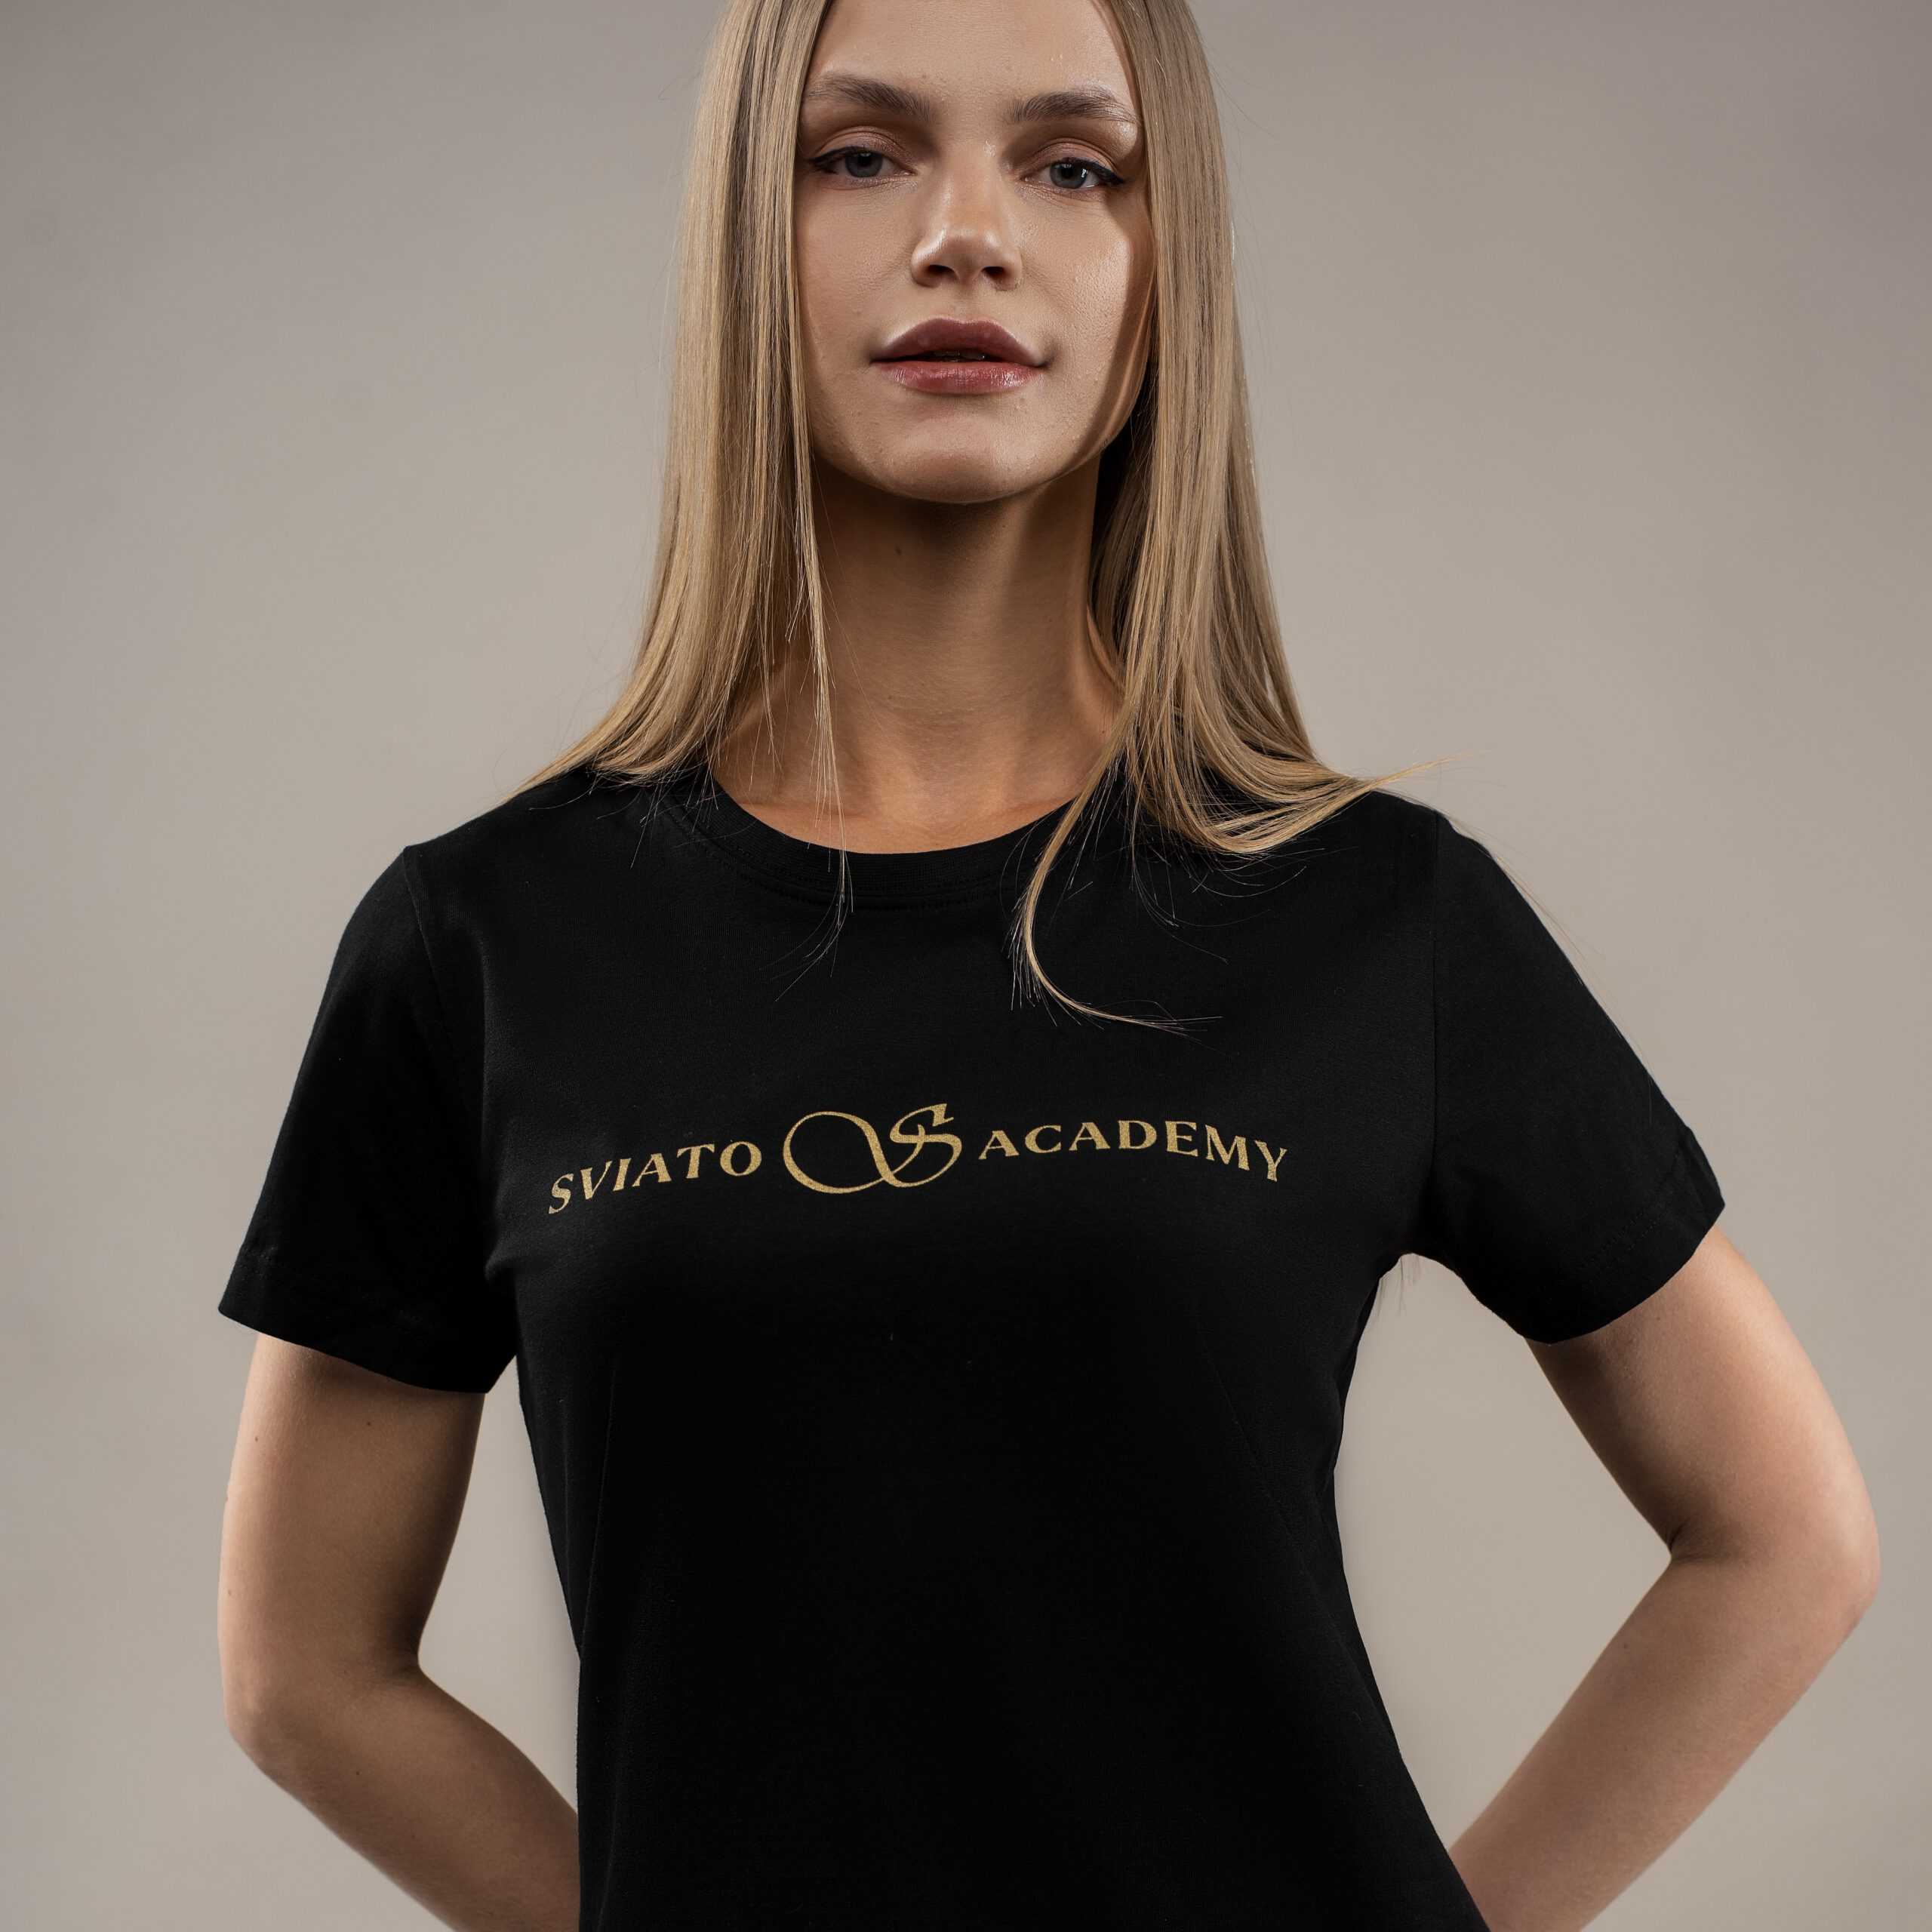 Sviato Academy Women’s T-Shirt